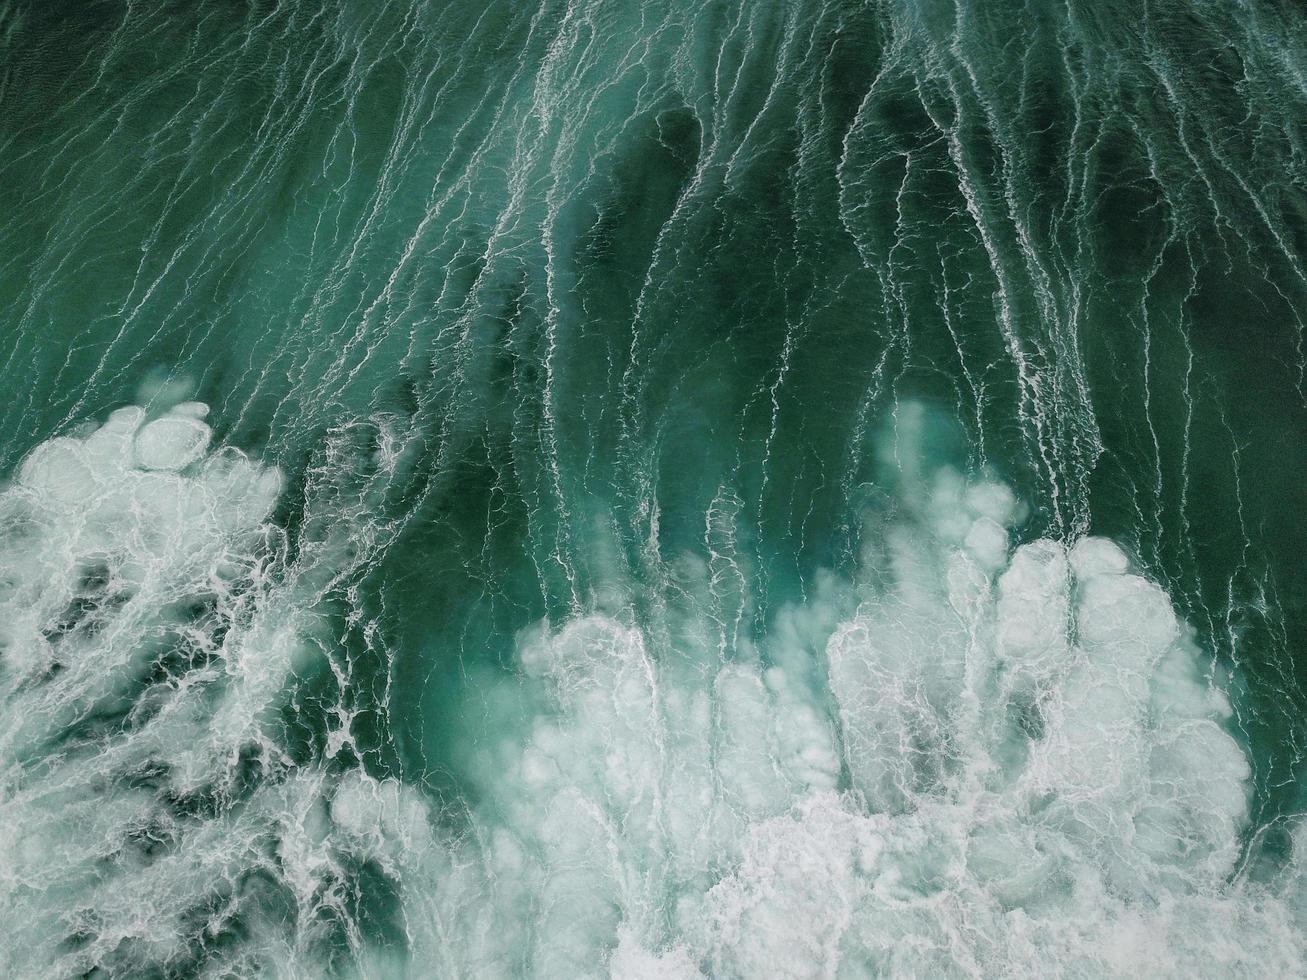 eau de mer blanche et verte photo